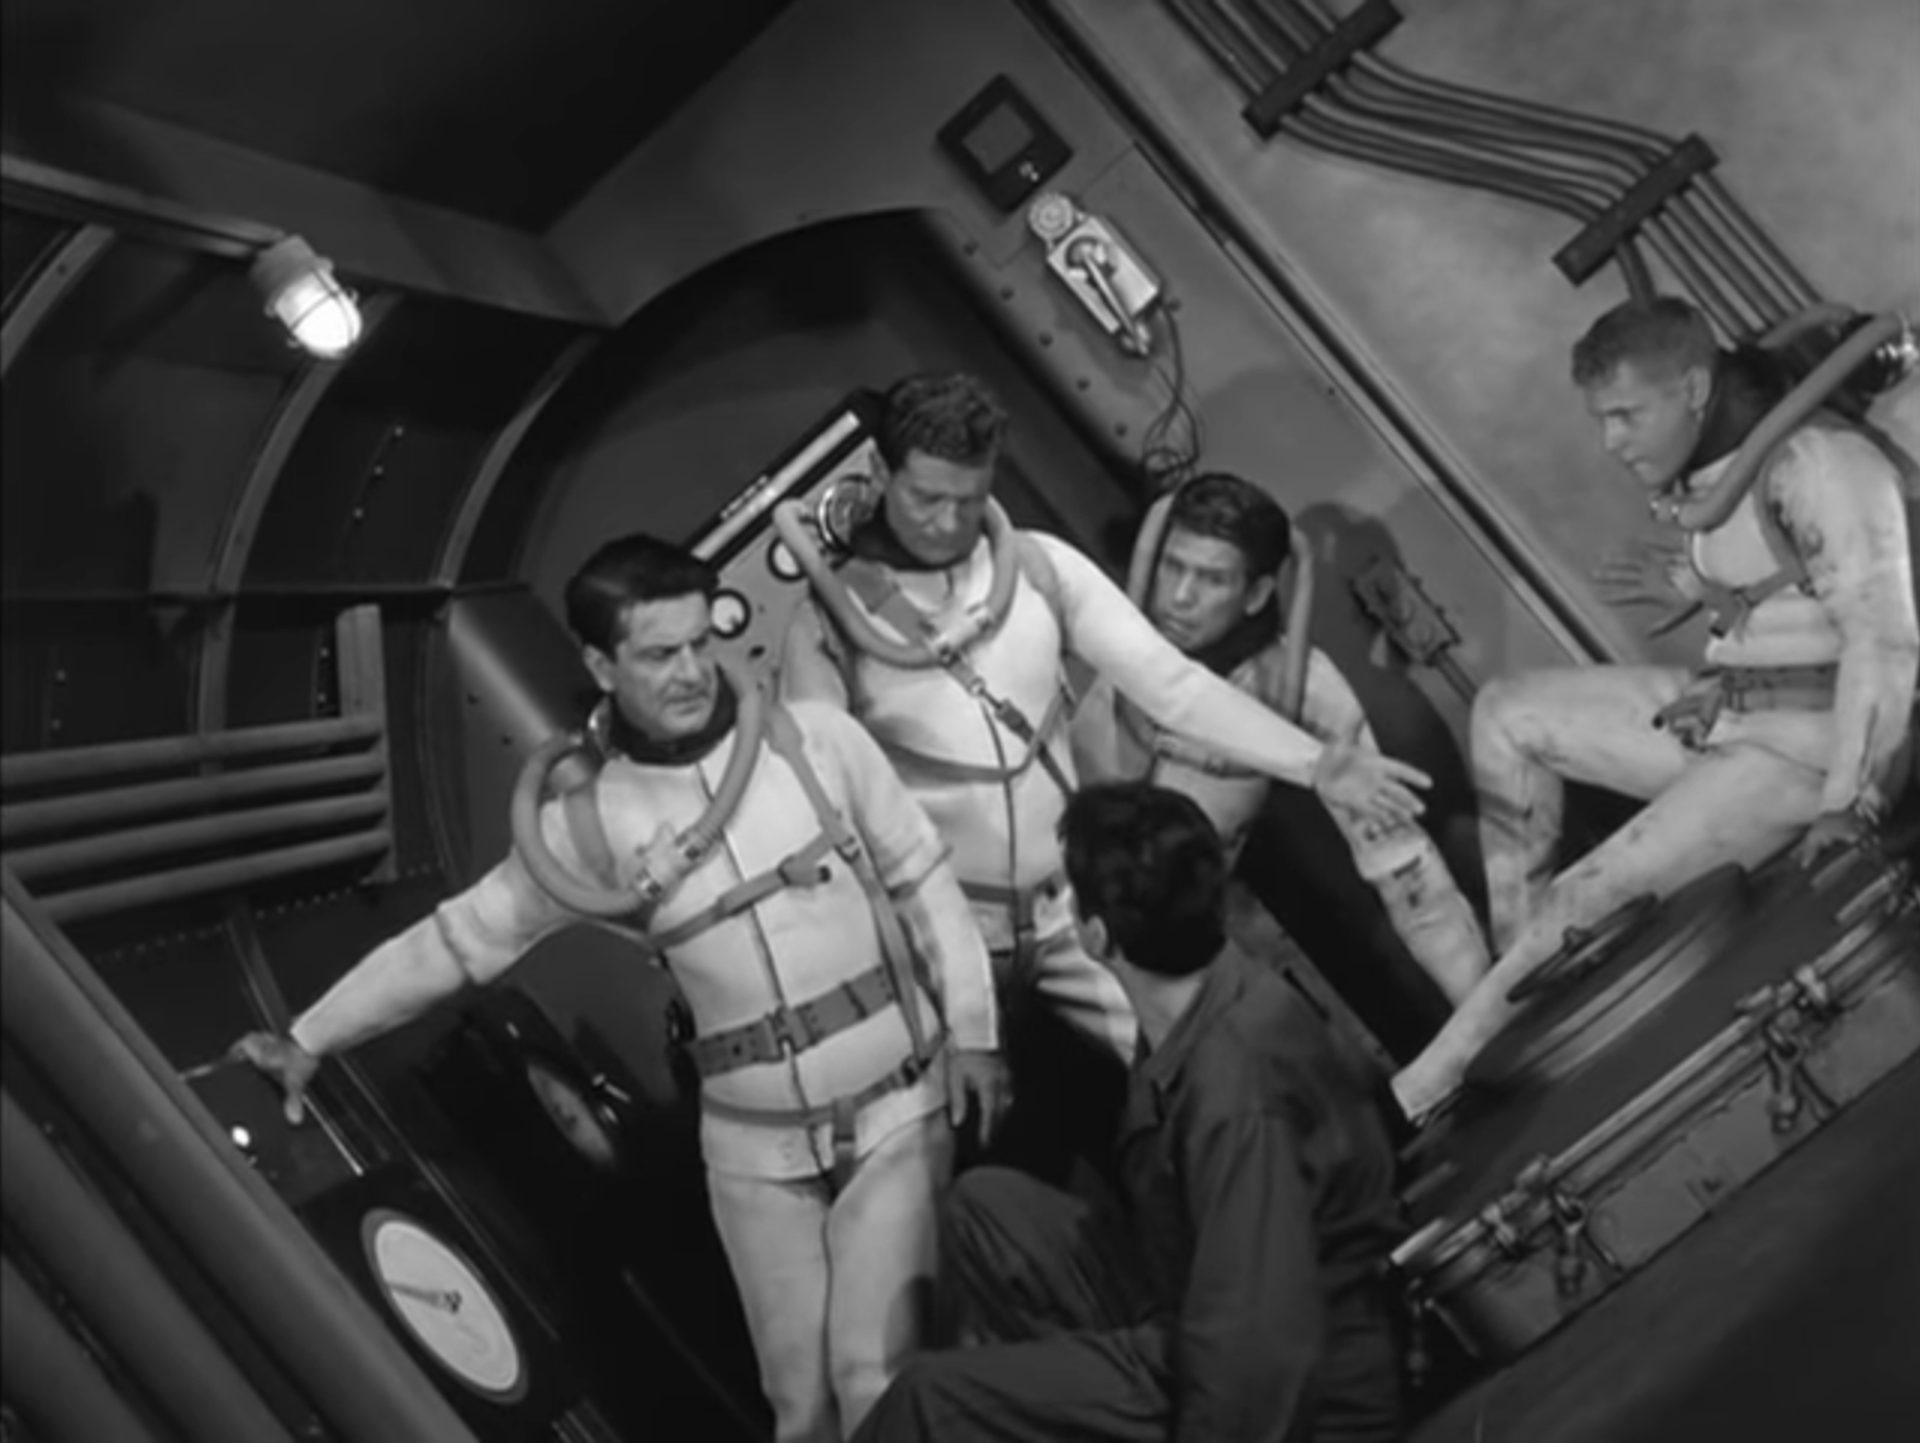 Schwarz-Weiß-Szene: Fünf Besatzungsmitglieder in Schräglage im U-Boot, vier von ihnen tragen Taucheranzüge ohne Helme.